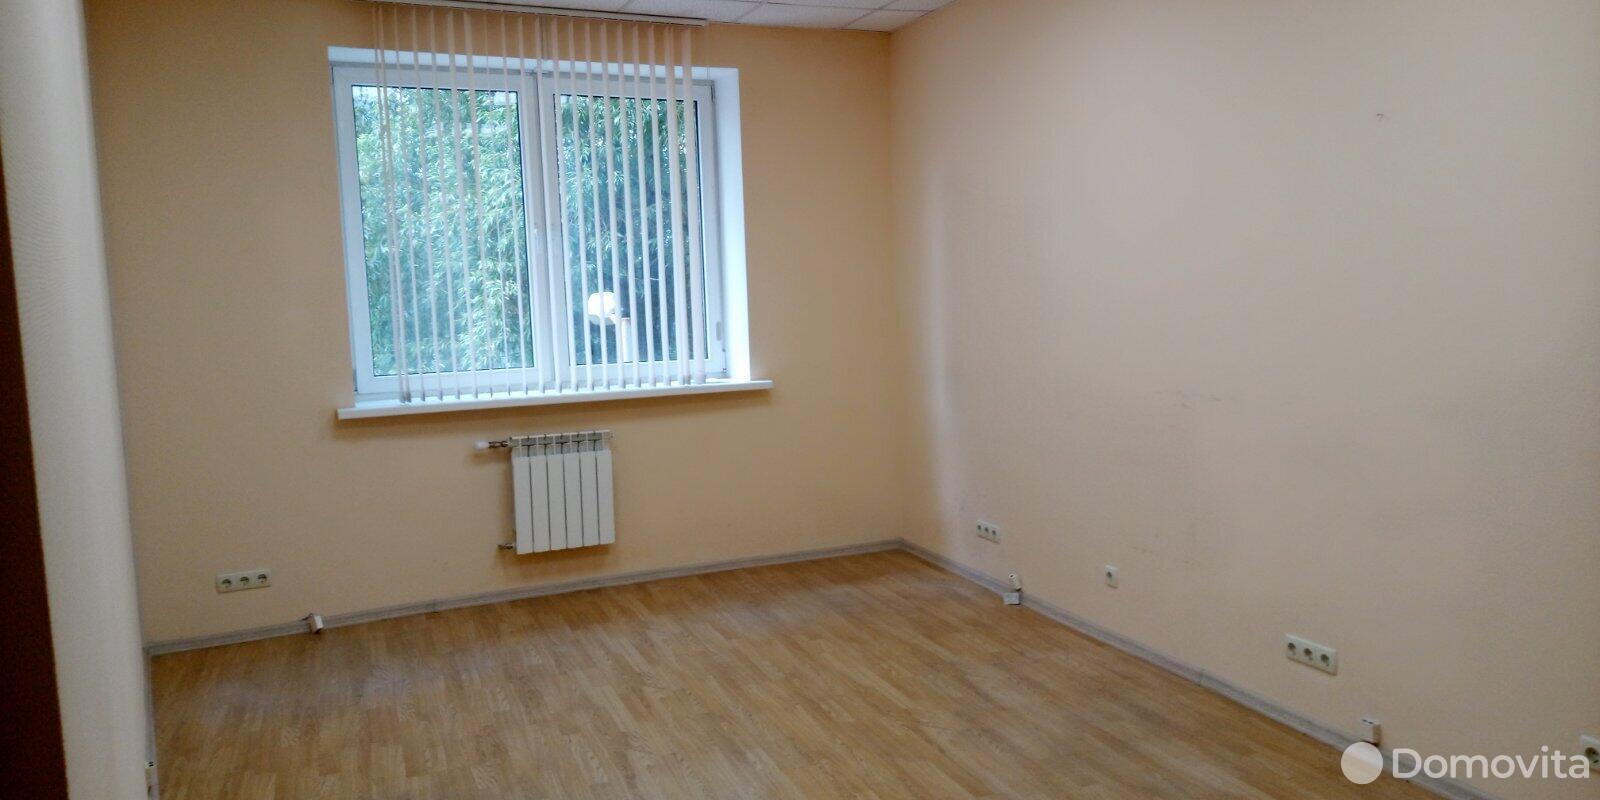 Продажа офиса на ул. Мележа, д. 1 в Минске, 44000USD - фото 1